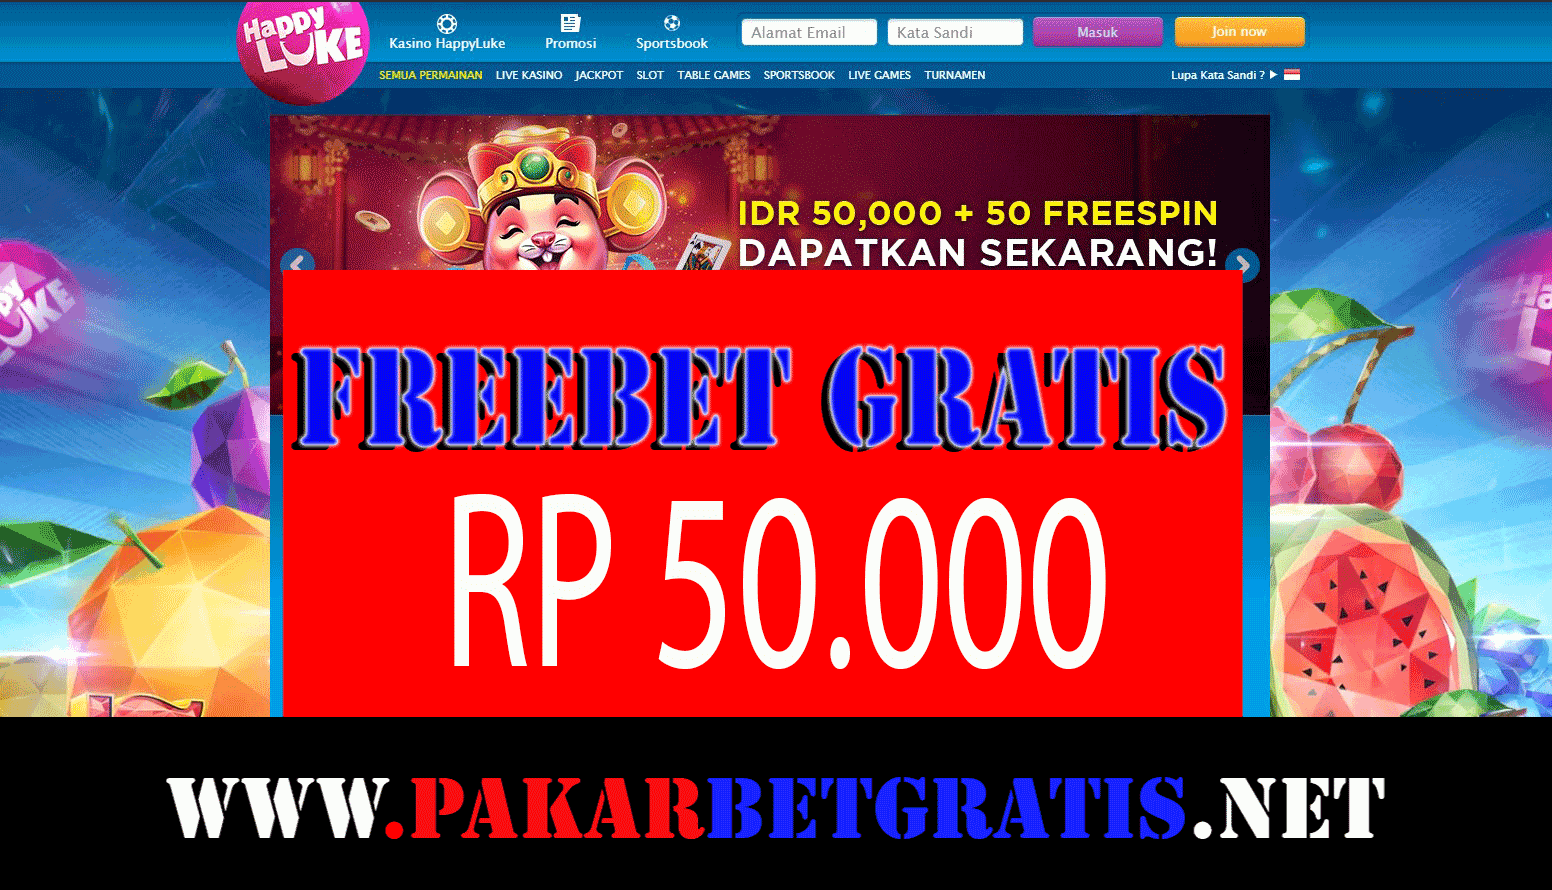 Freebet Gratis HappyLuke Rp 50.000 Tanpa Deposit